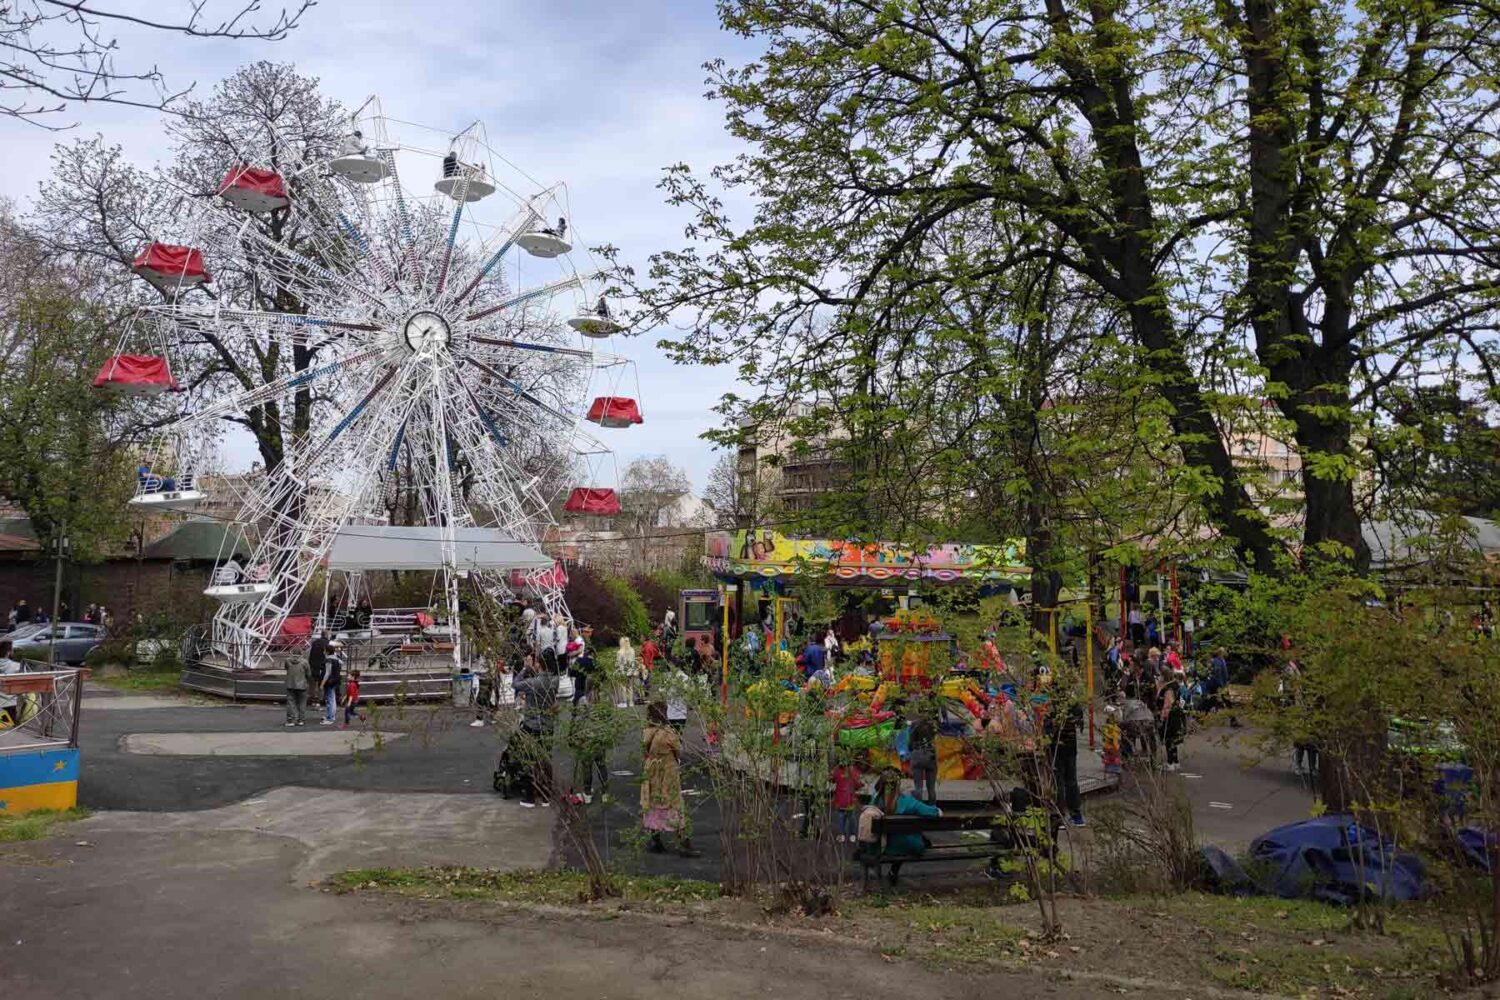 Zabava Beograd - luna park na Kalemegdanu